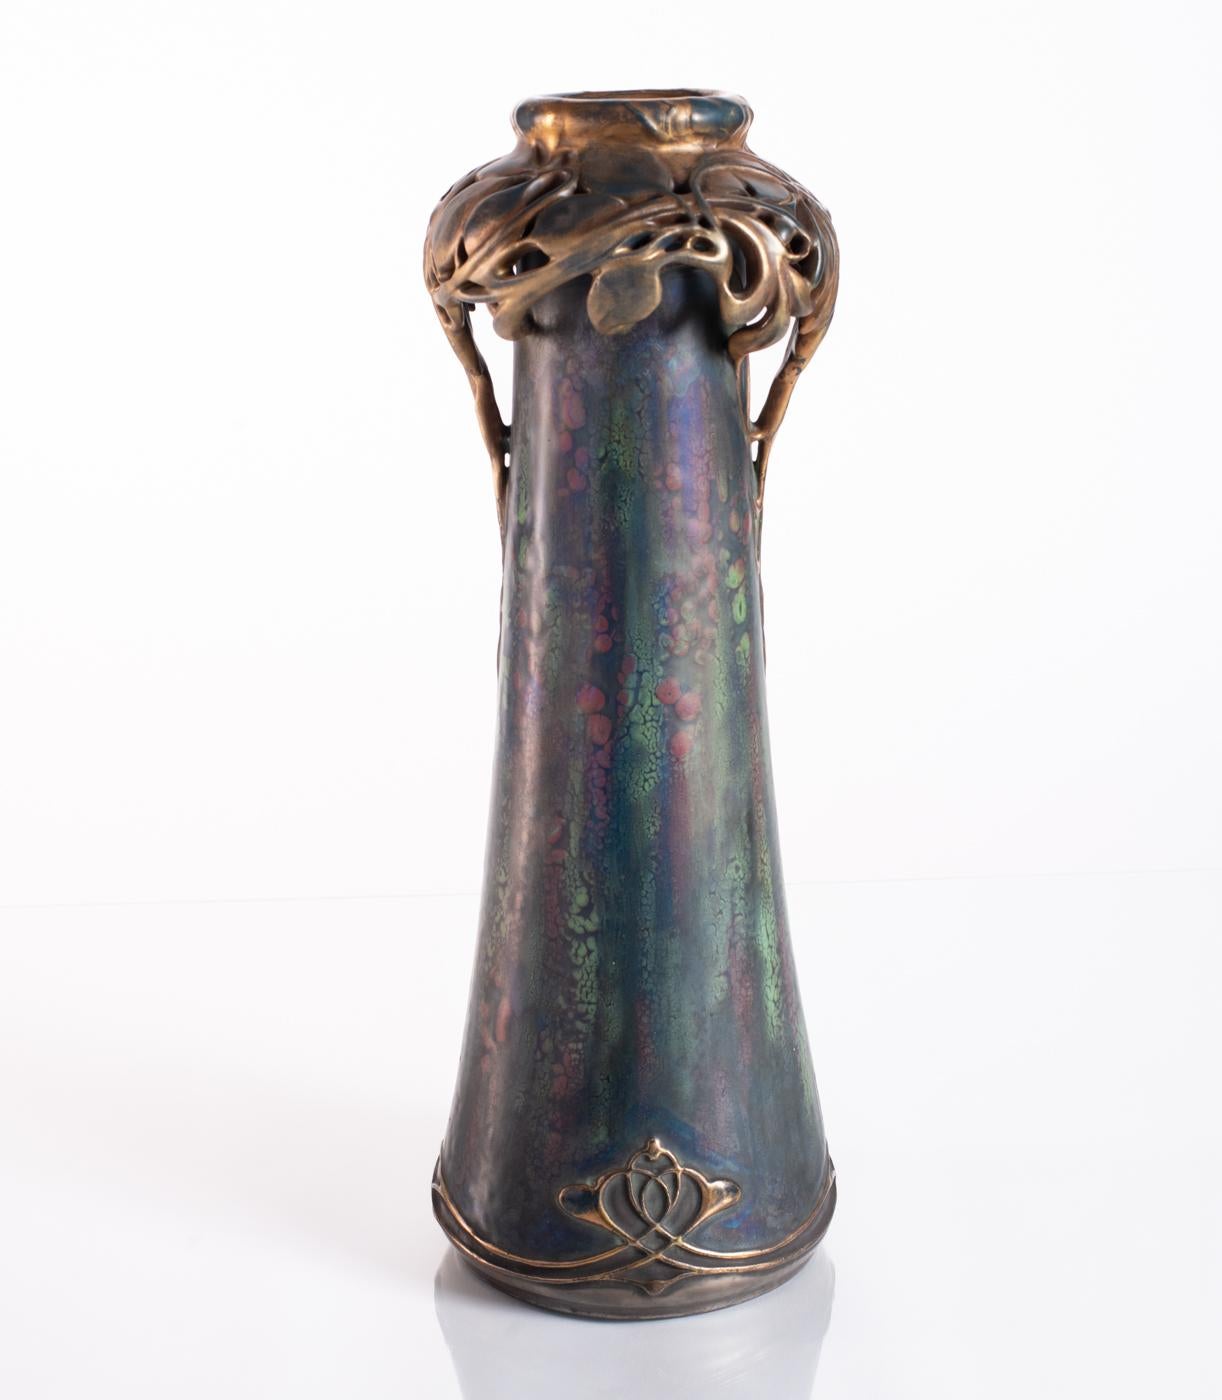 Floral Wreath Vase by Paul Dachsel for Amphora c. 1900 - Art Nouveau Art by RStK Amphora